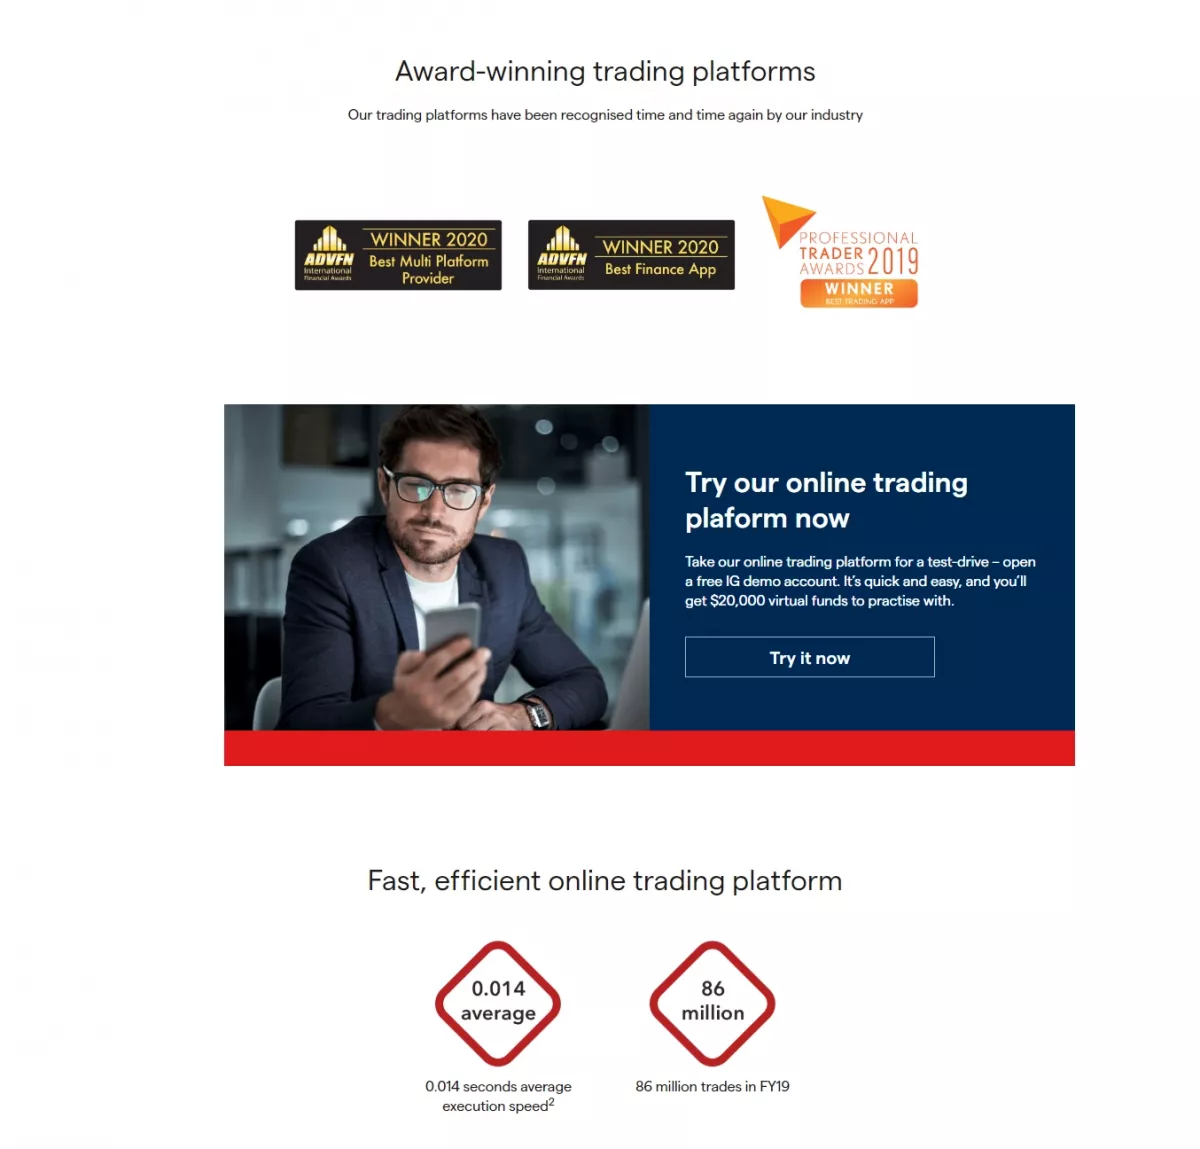 IG Online Trading Platforms